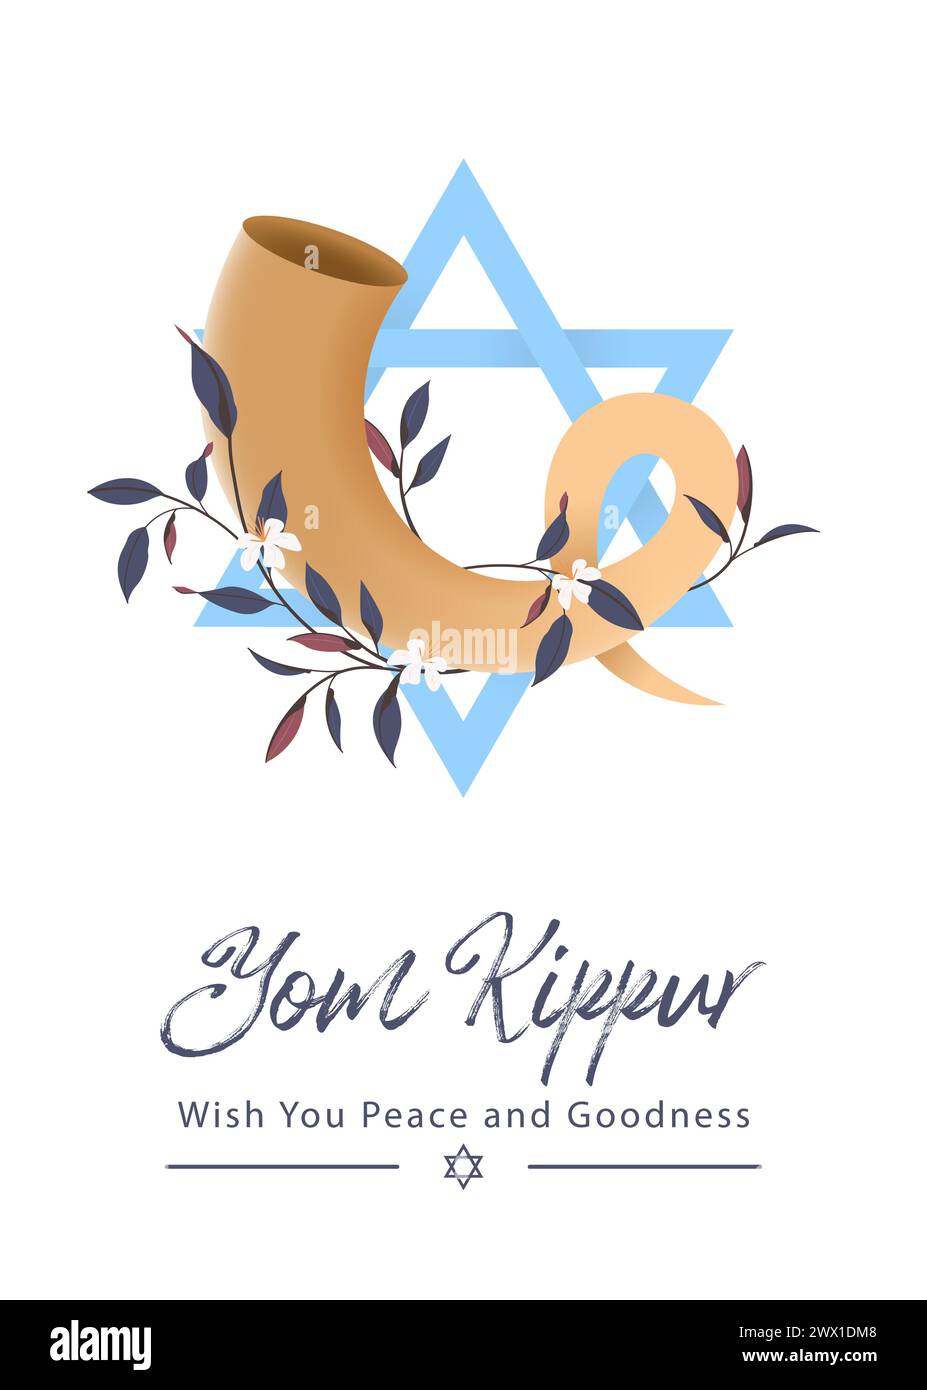 Illustrazione del vettore modello Yom Kippur. Design decorativo per le festività ebraiche adatto per biglietti d'auguri, poster, banner, volantino. Israele festività per la Giudea Illustrazione Vettoriale